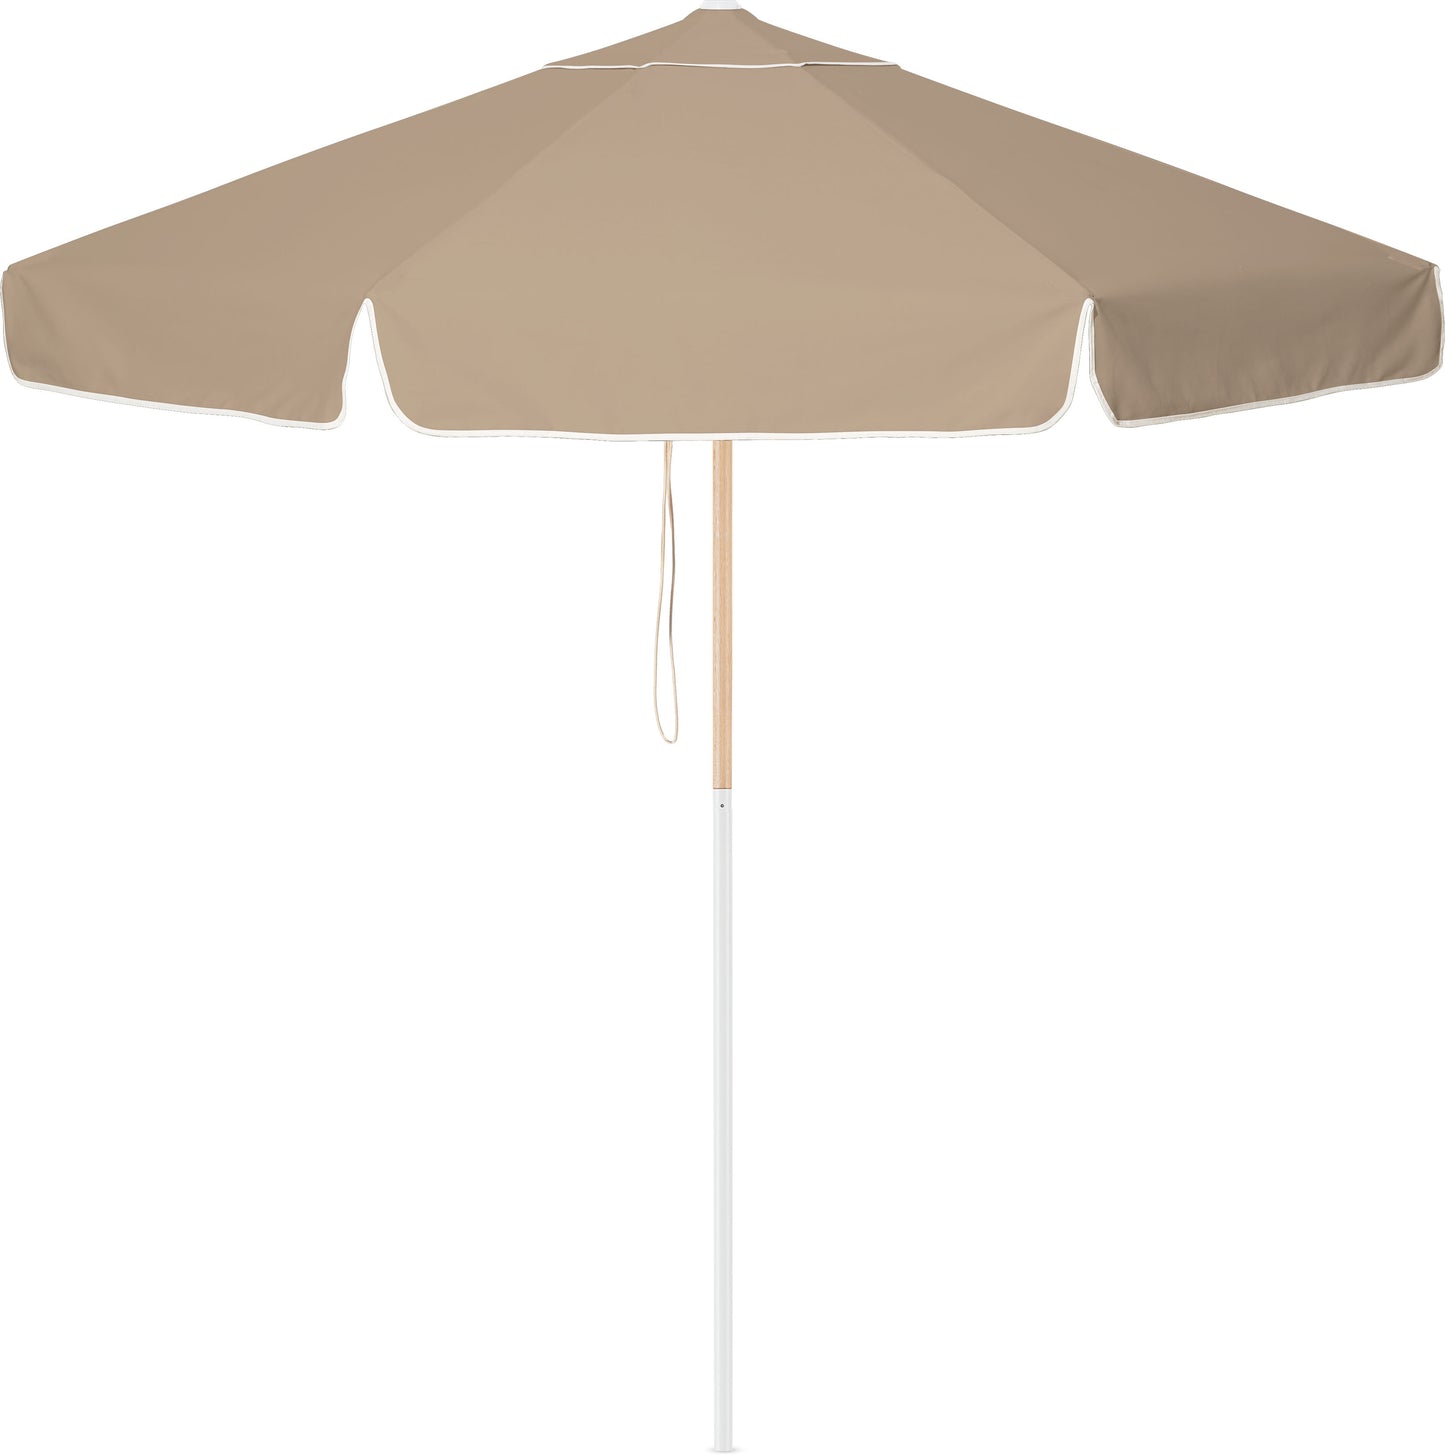 Husk Market Umbrella